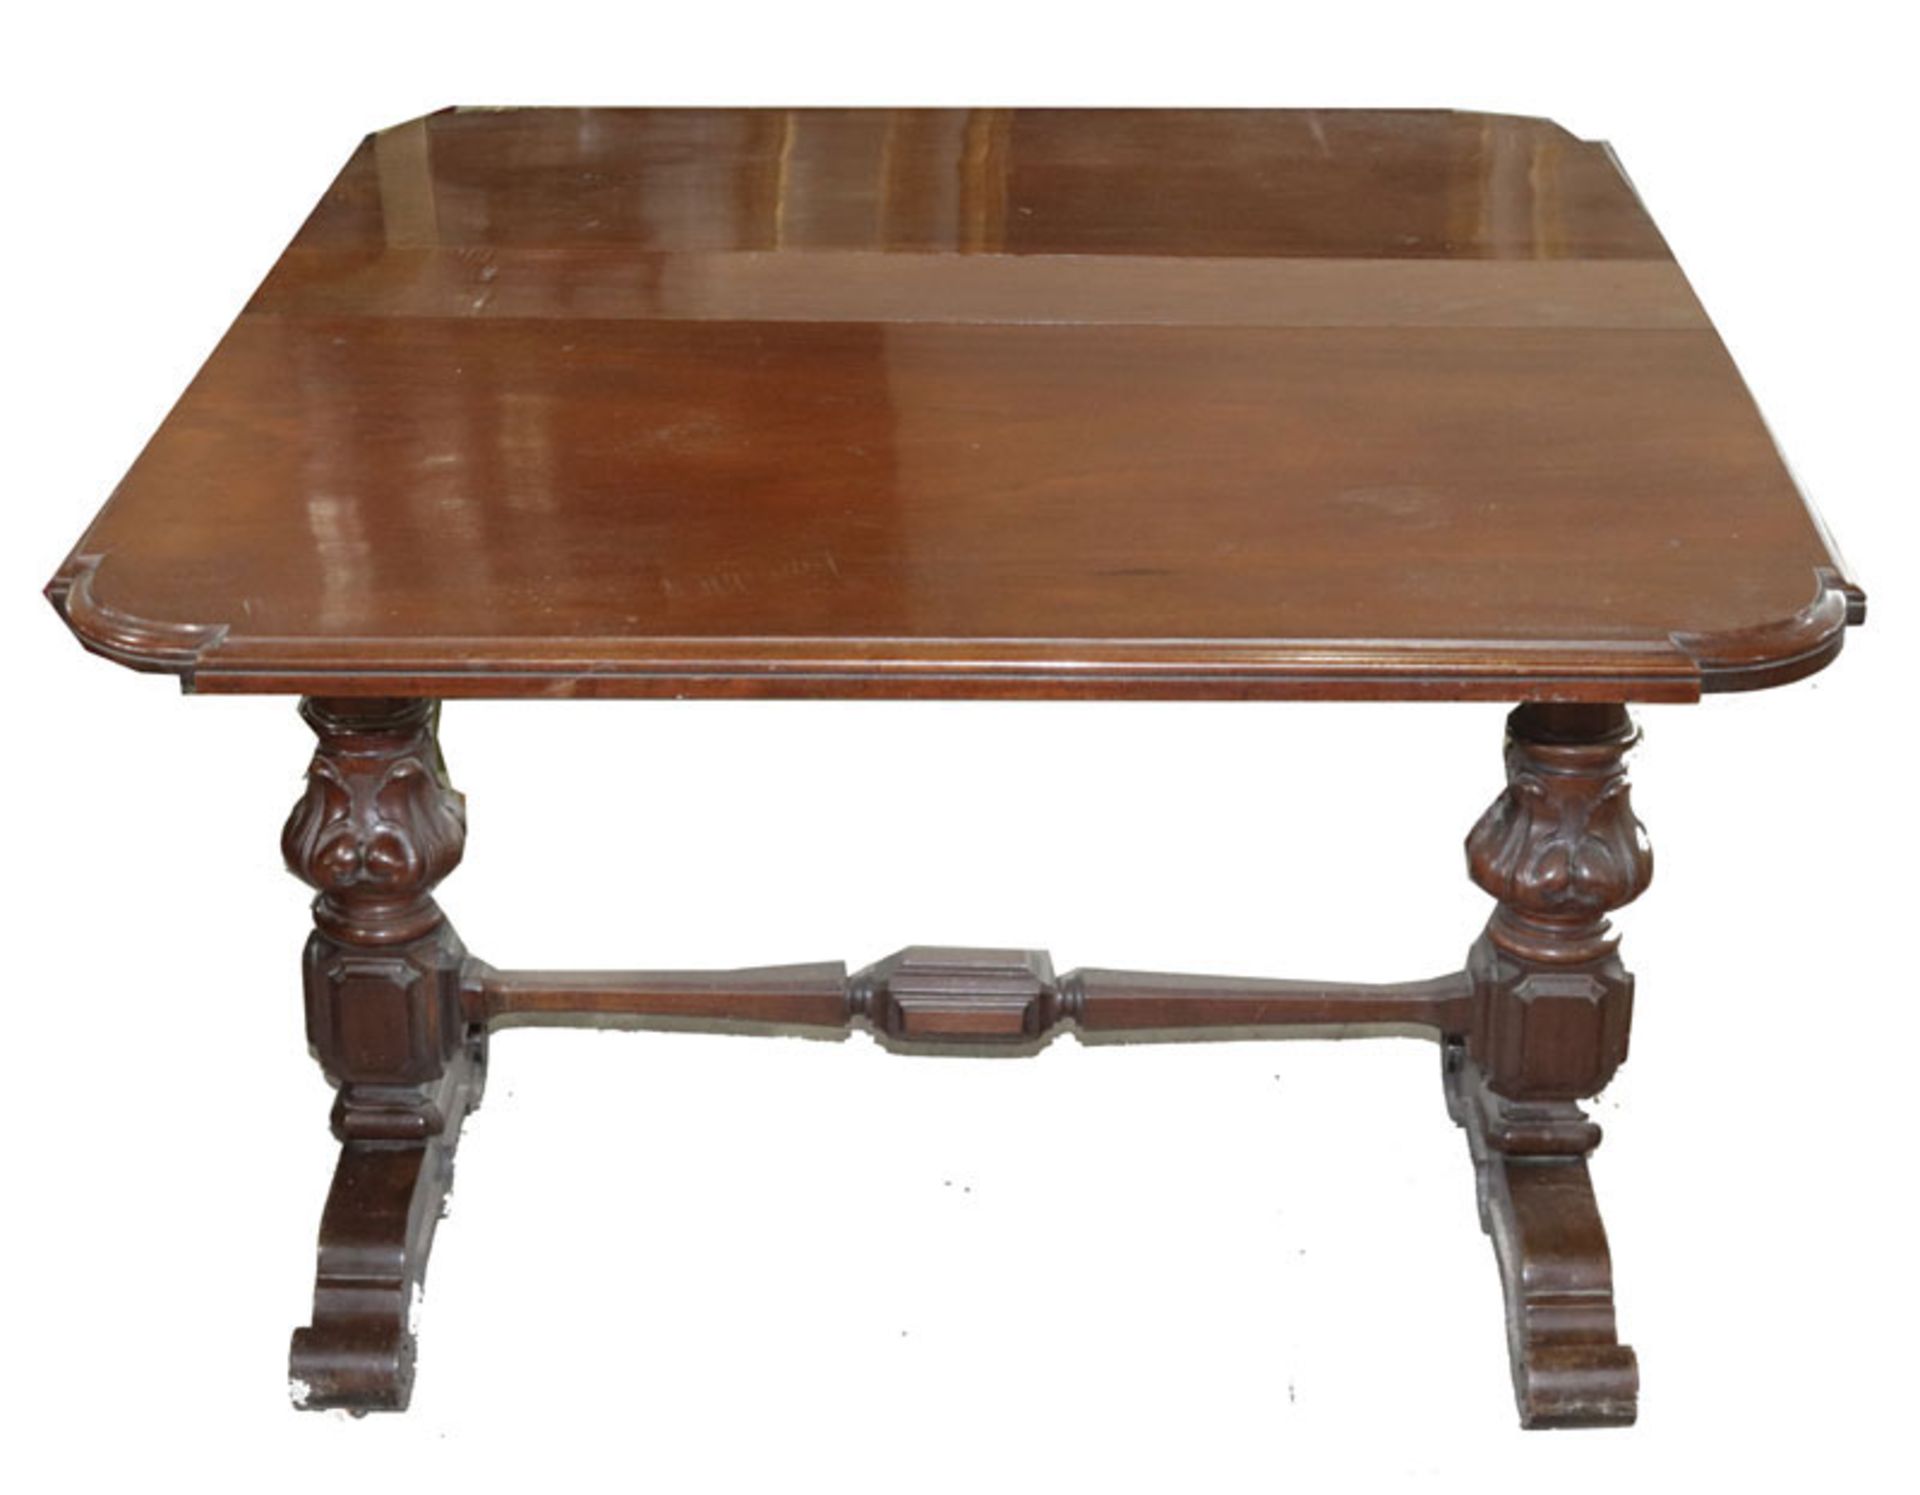 Englischer Tisch auf gedrechselten Beinen, 19. Jahrhundert, beidseitig abklappbar, H 75 cm, B 15/95 